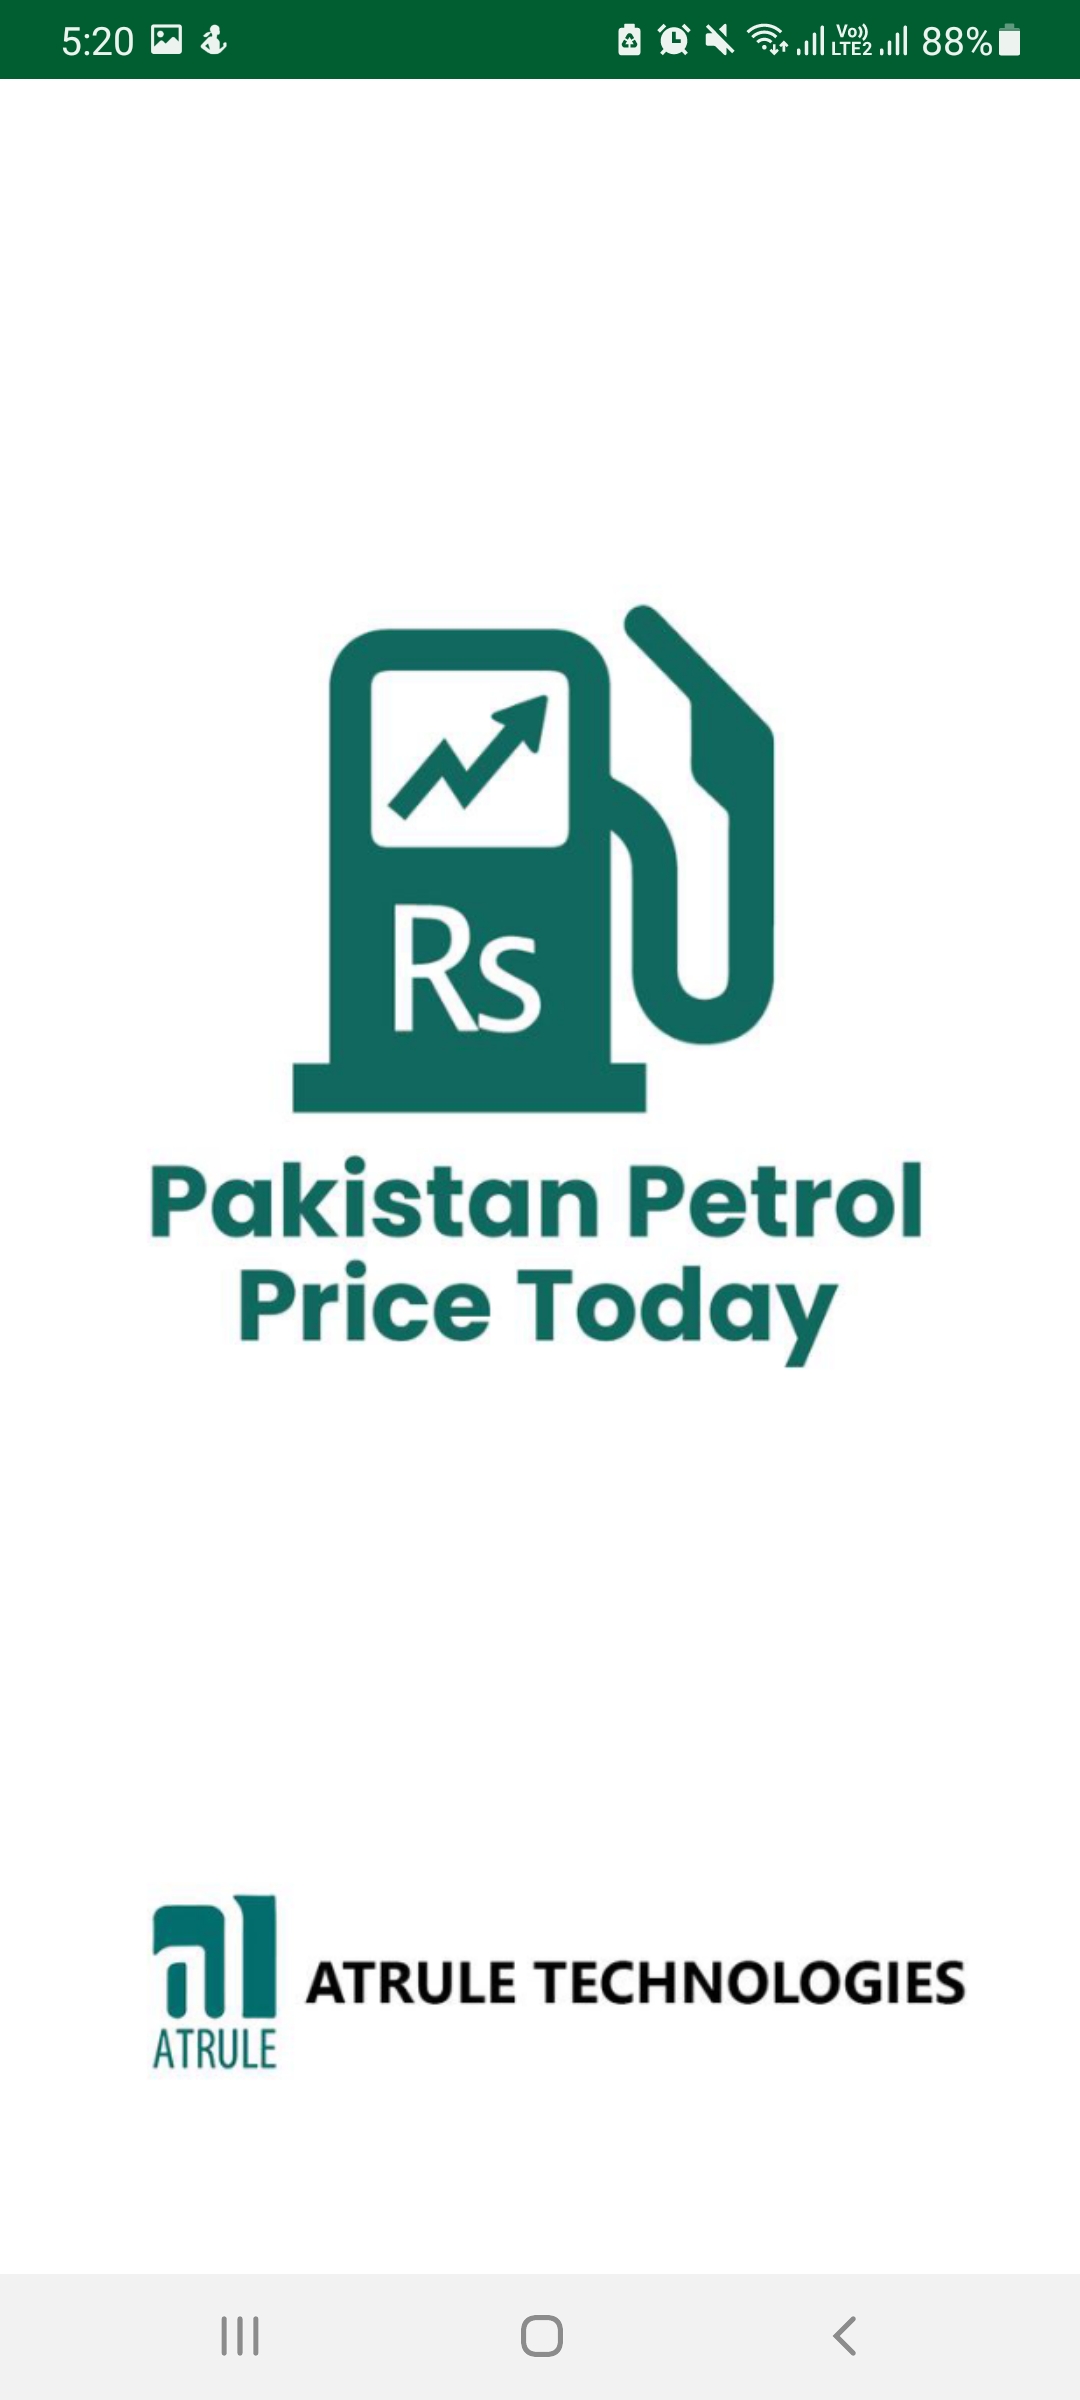 Pakistan Petrol Price Today